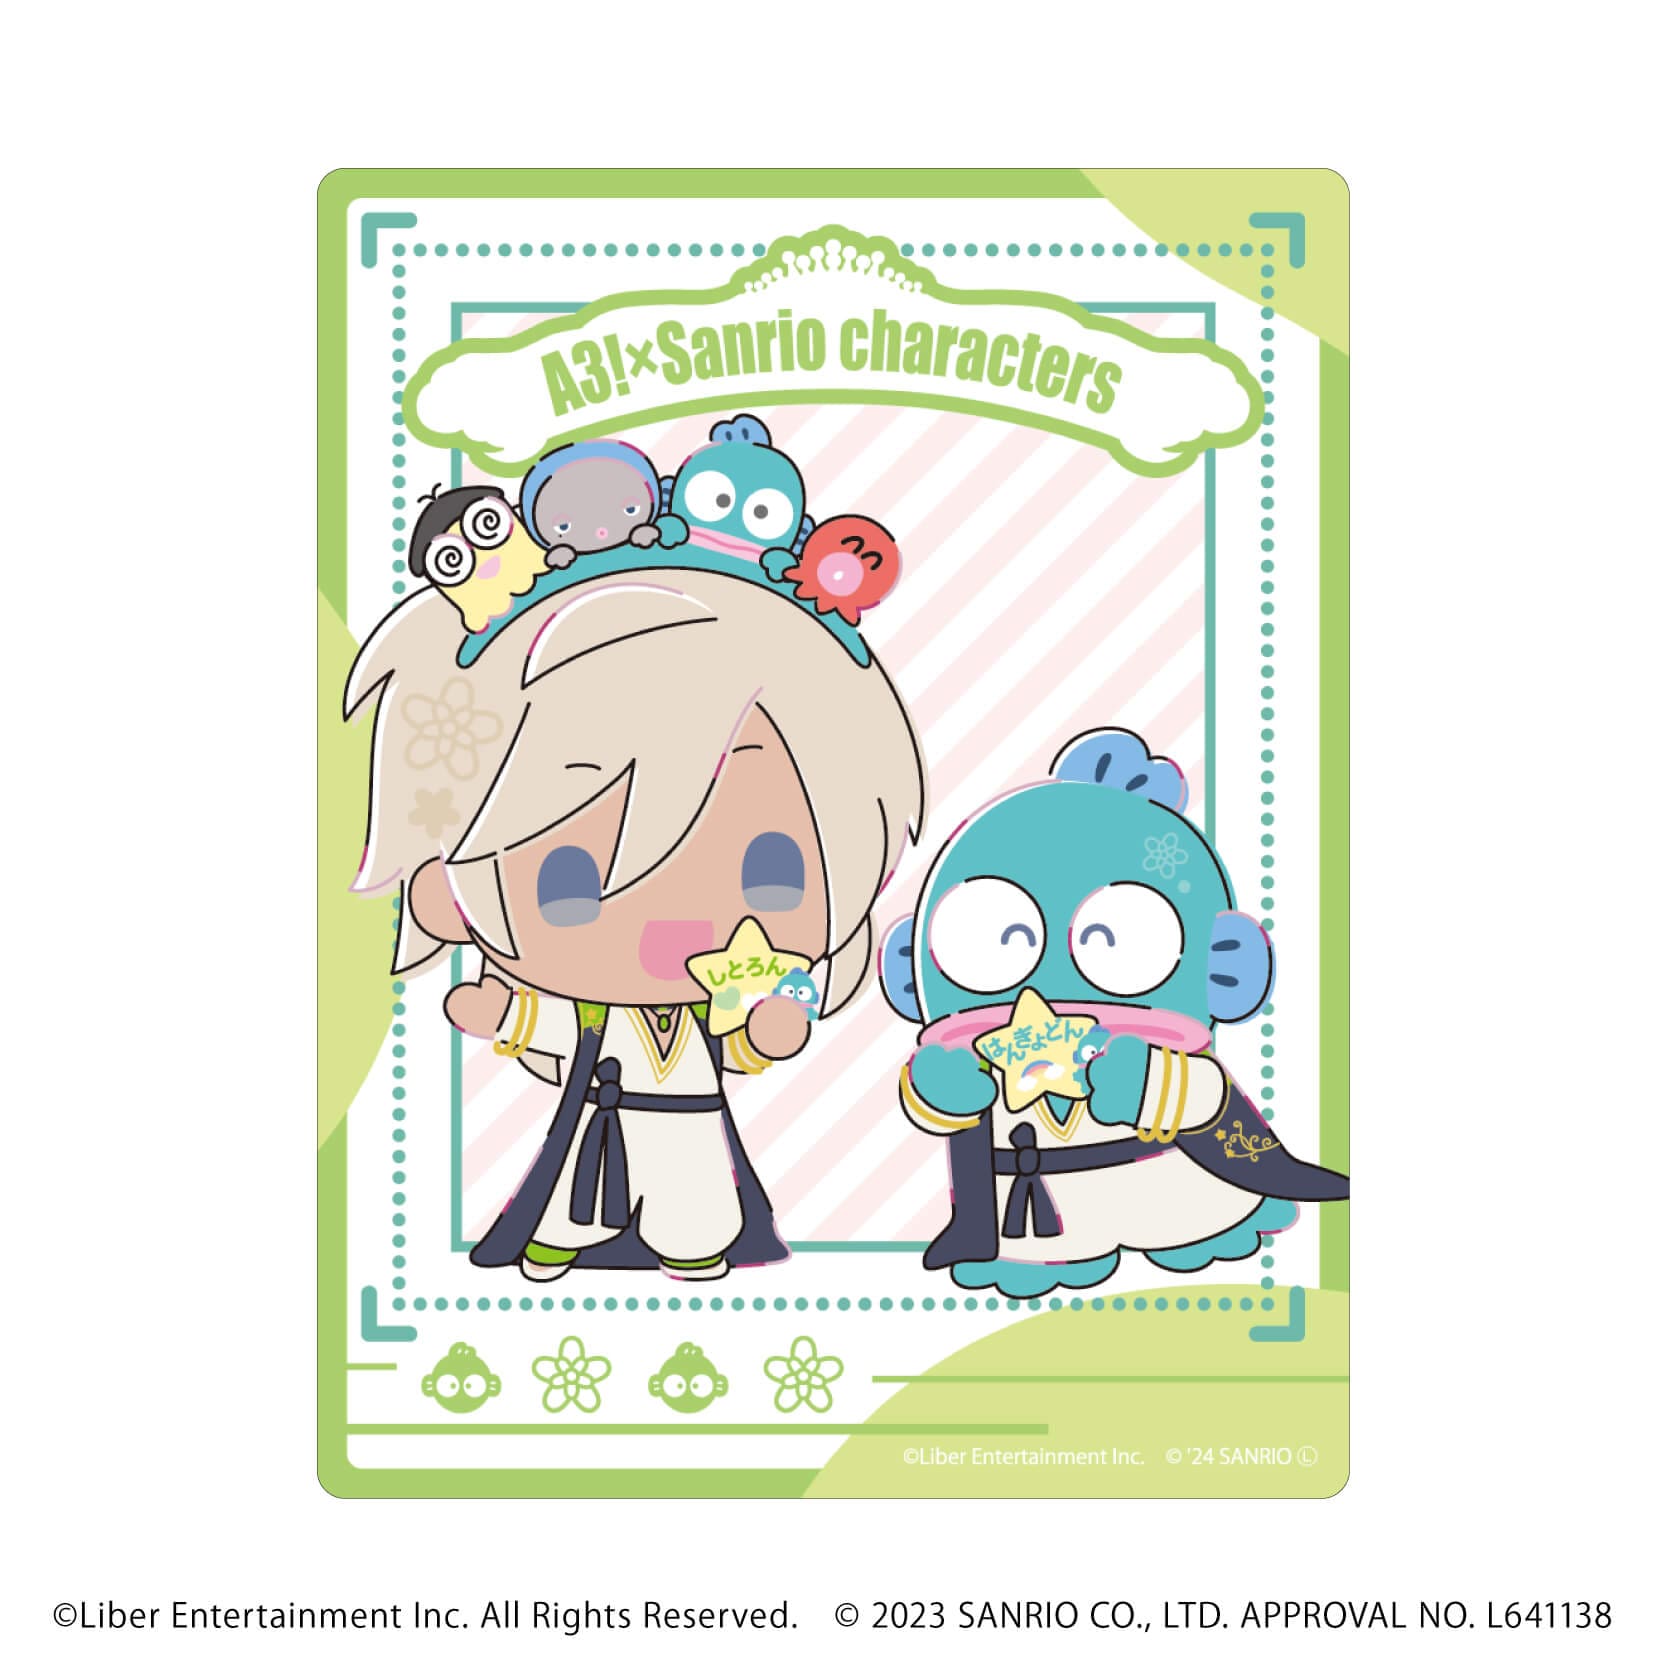 アクリルカード「A3!×Sanrio characters」09/S＆S コンプリートBOX(全12種)(ミニキャライラスト)